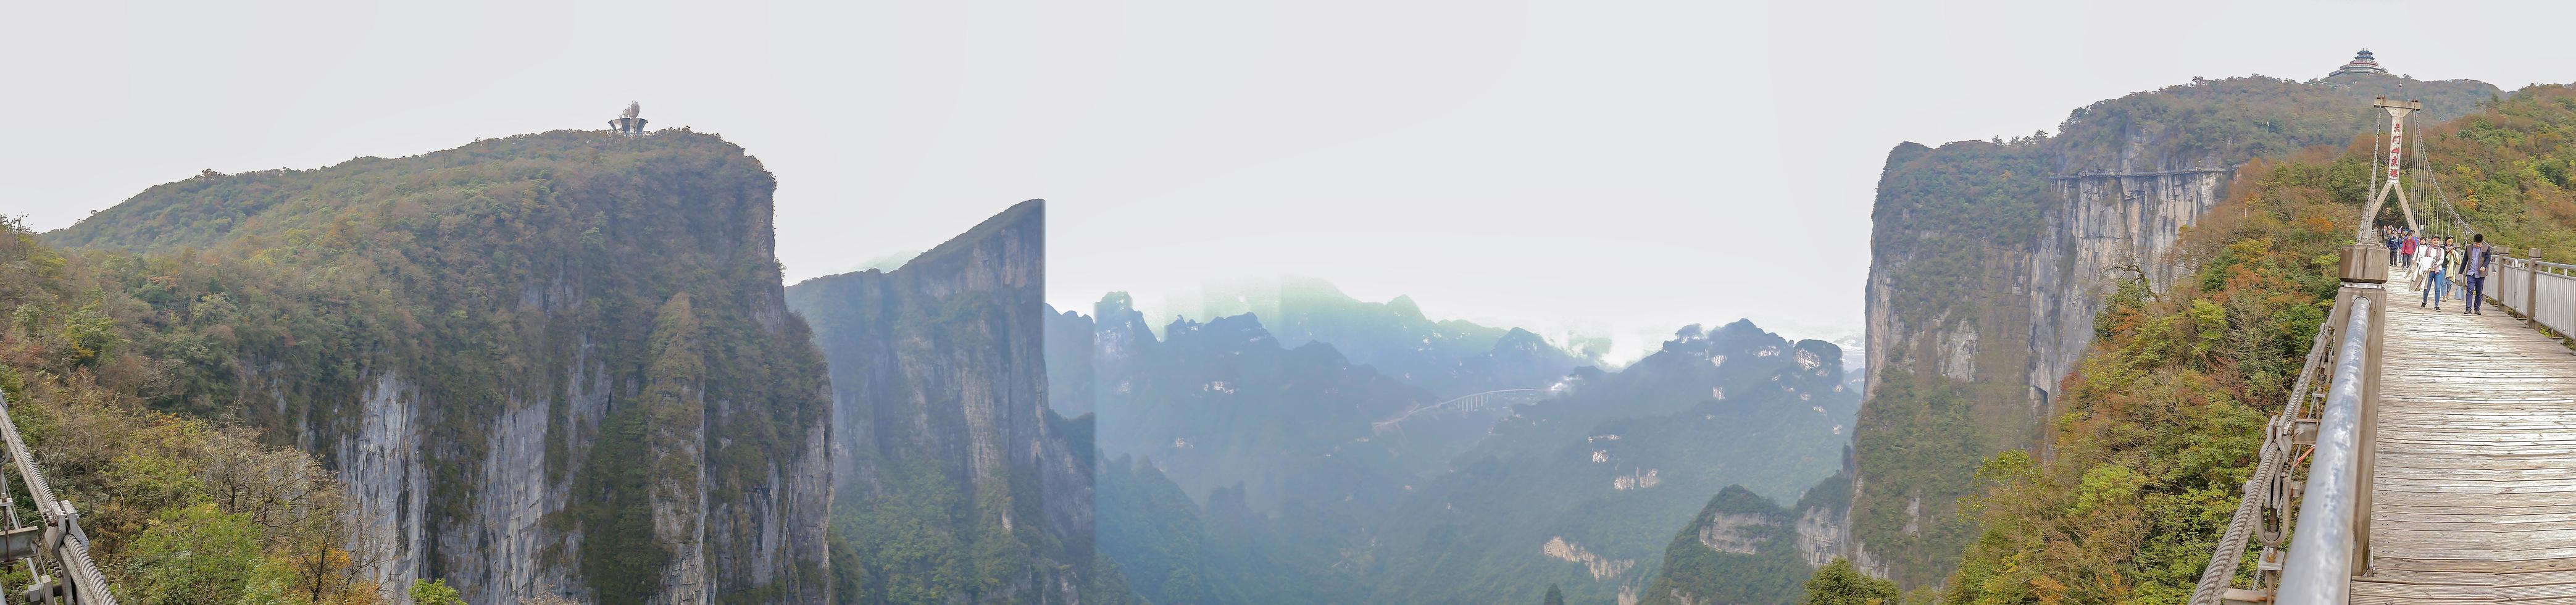 zhangjiajie.china - 15. oktober 2018. unbekannter tourist, der auf hängebrücke geht, überquert den berg am berg tianmen zhangjiajie china. tianmen berge reiseziel von zhangjiajie china foto